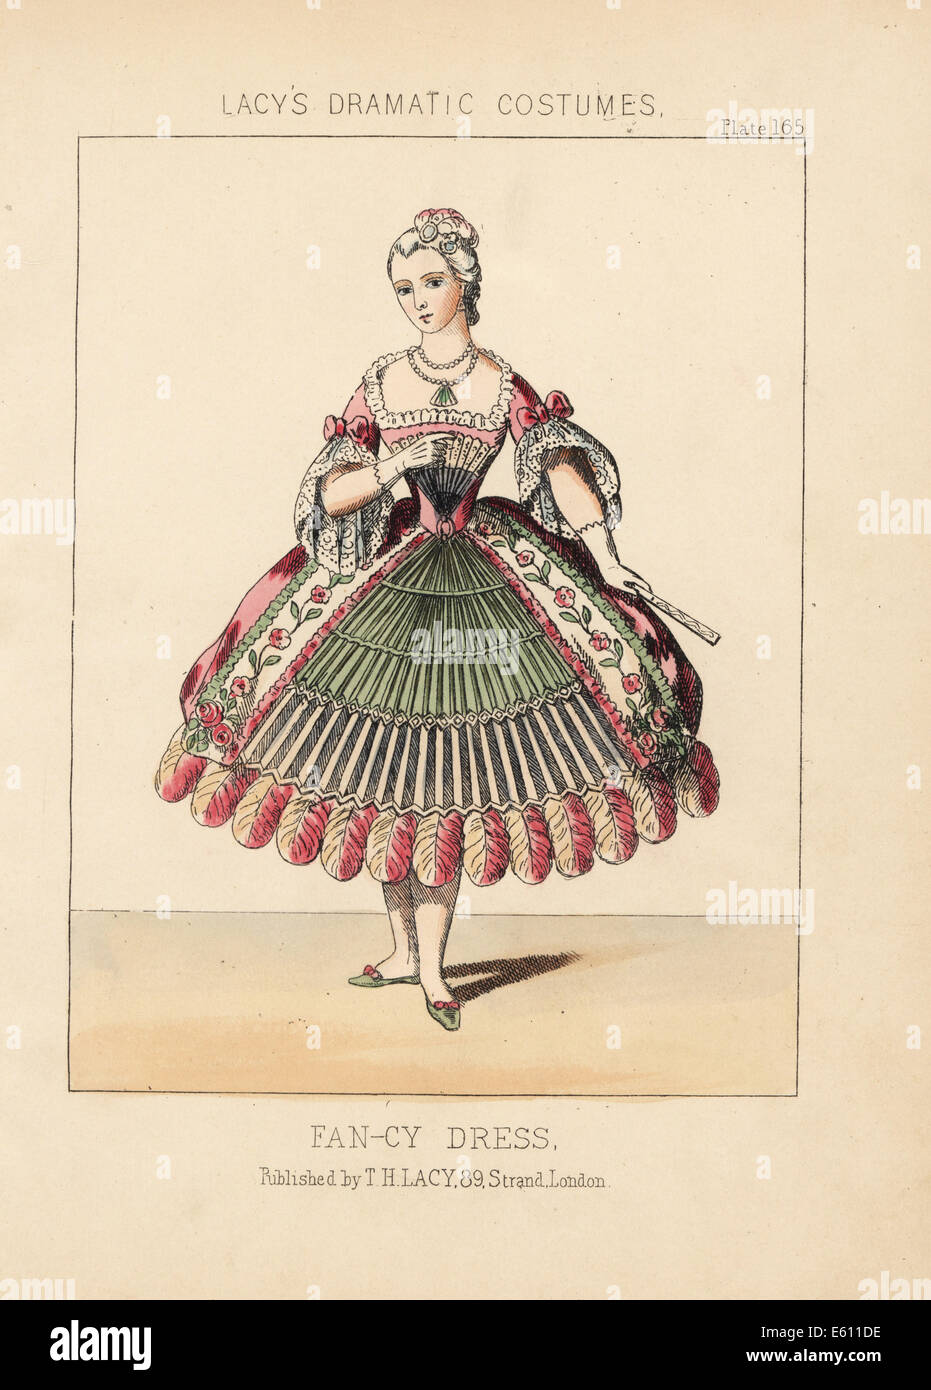 Woman in fancy dress costume based on a fan, 19th century. Stock Photo